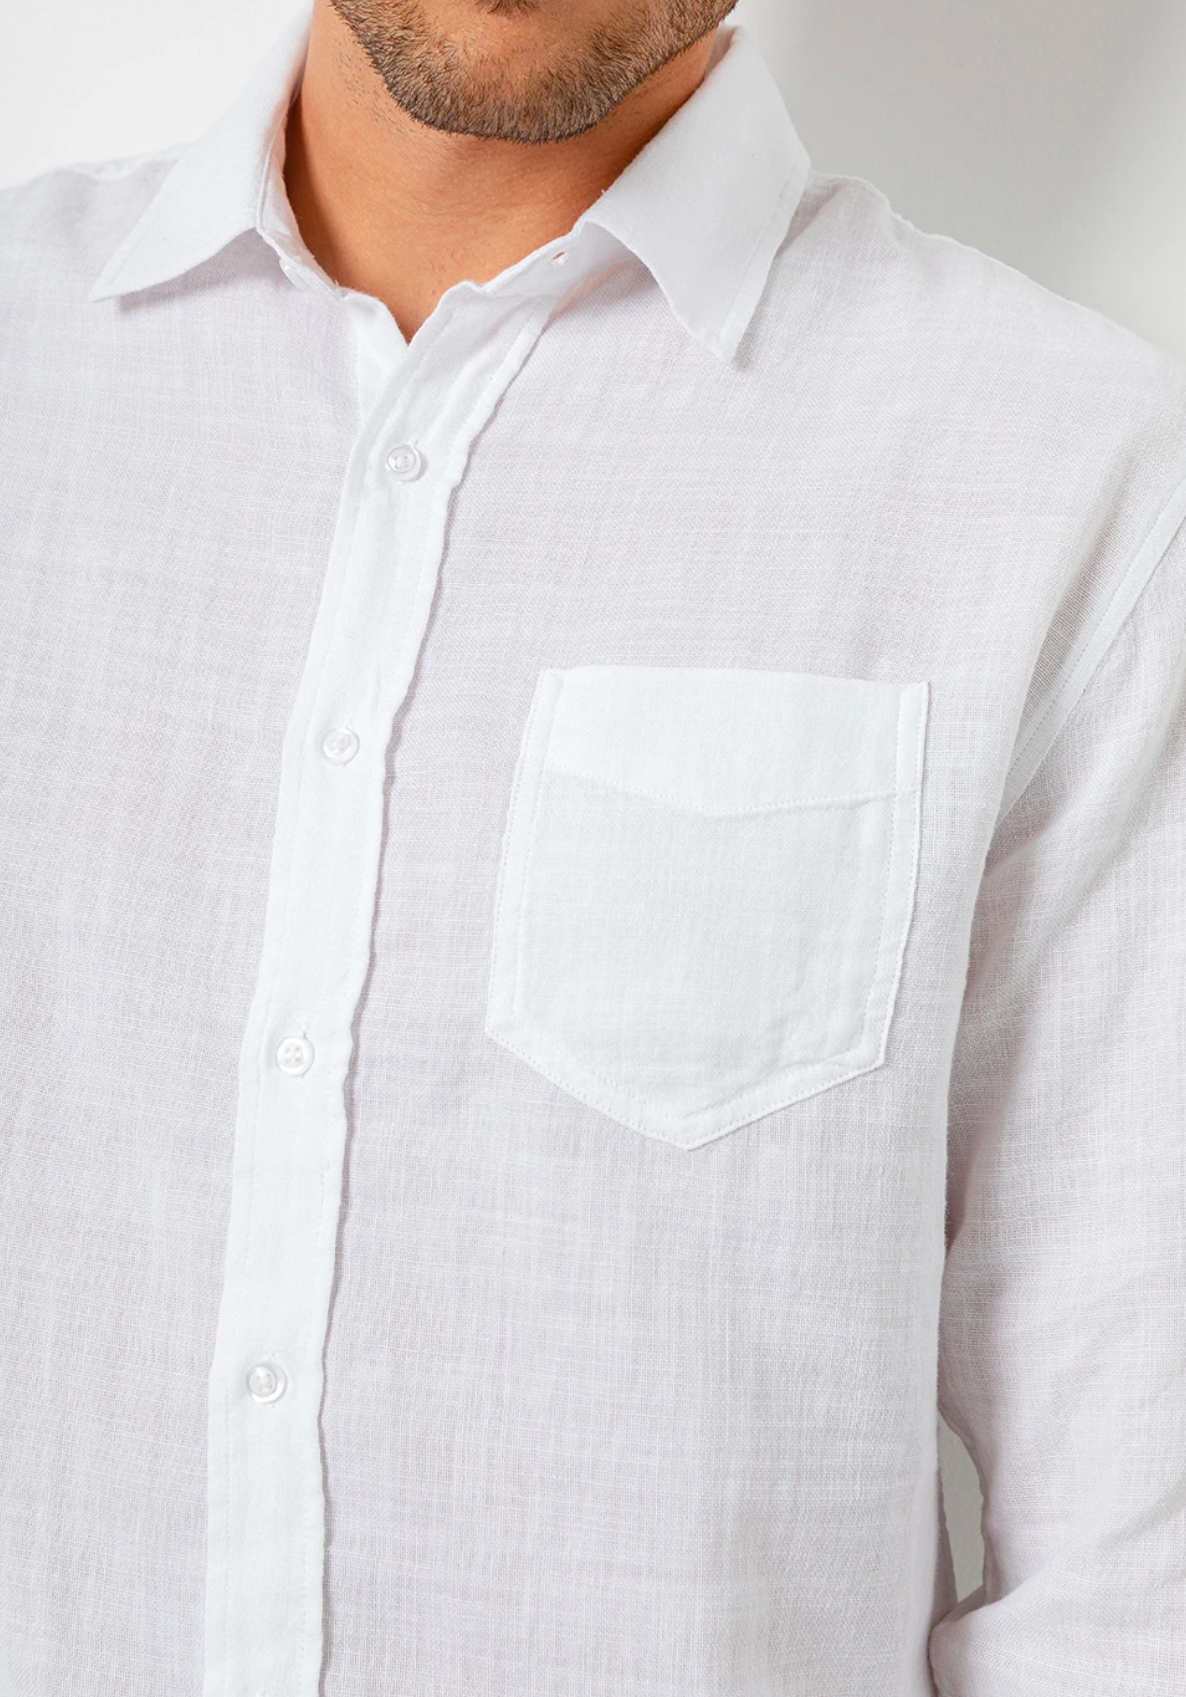 WYATT - WHITE Cotton Shirt